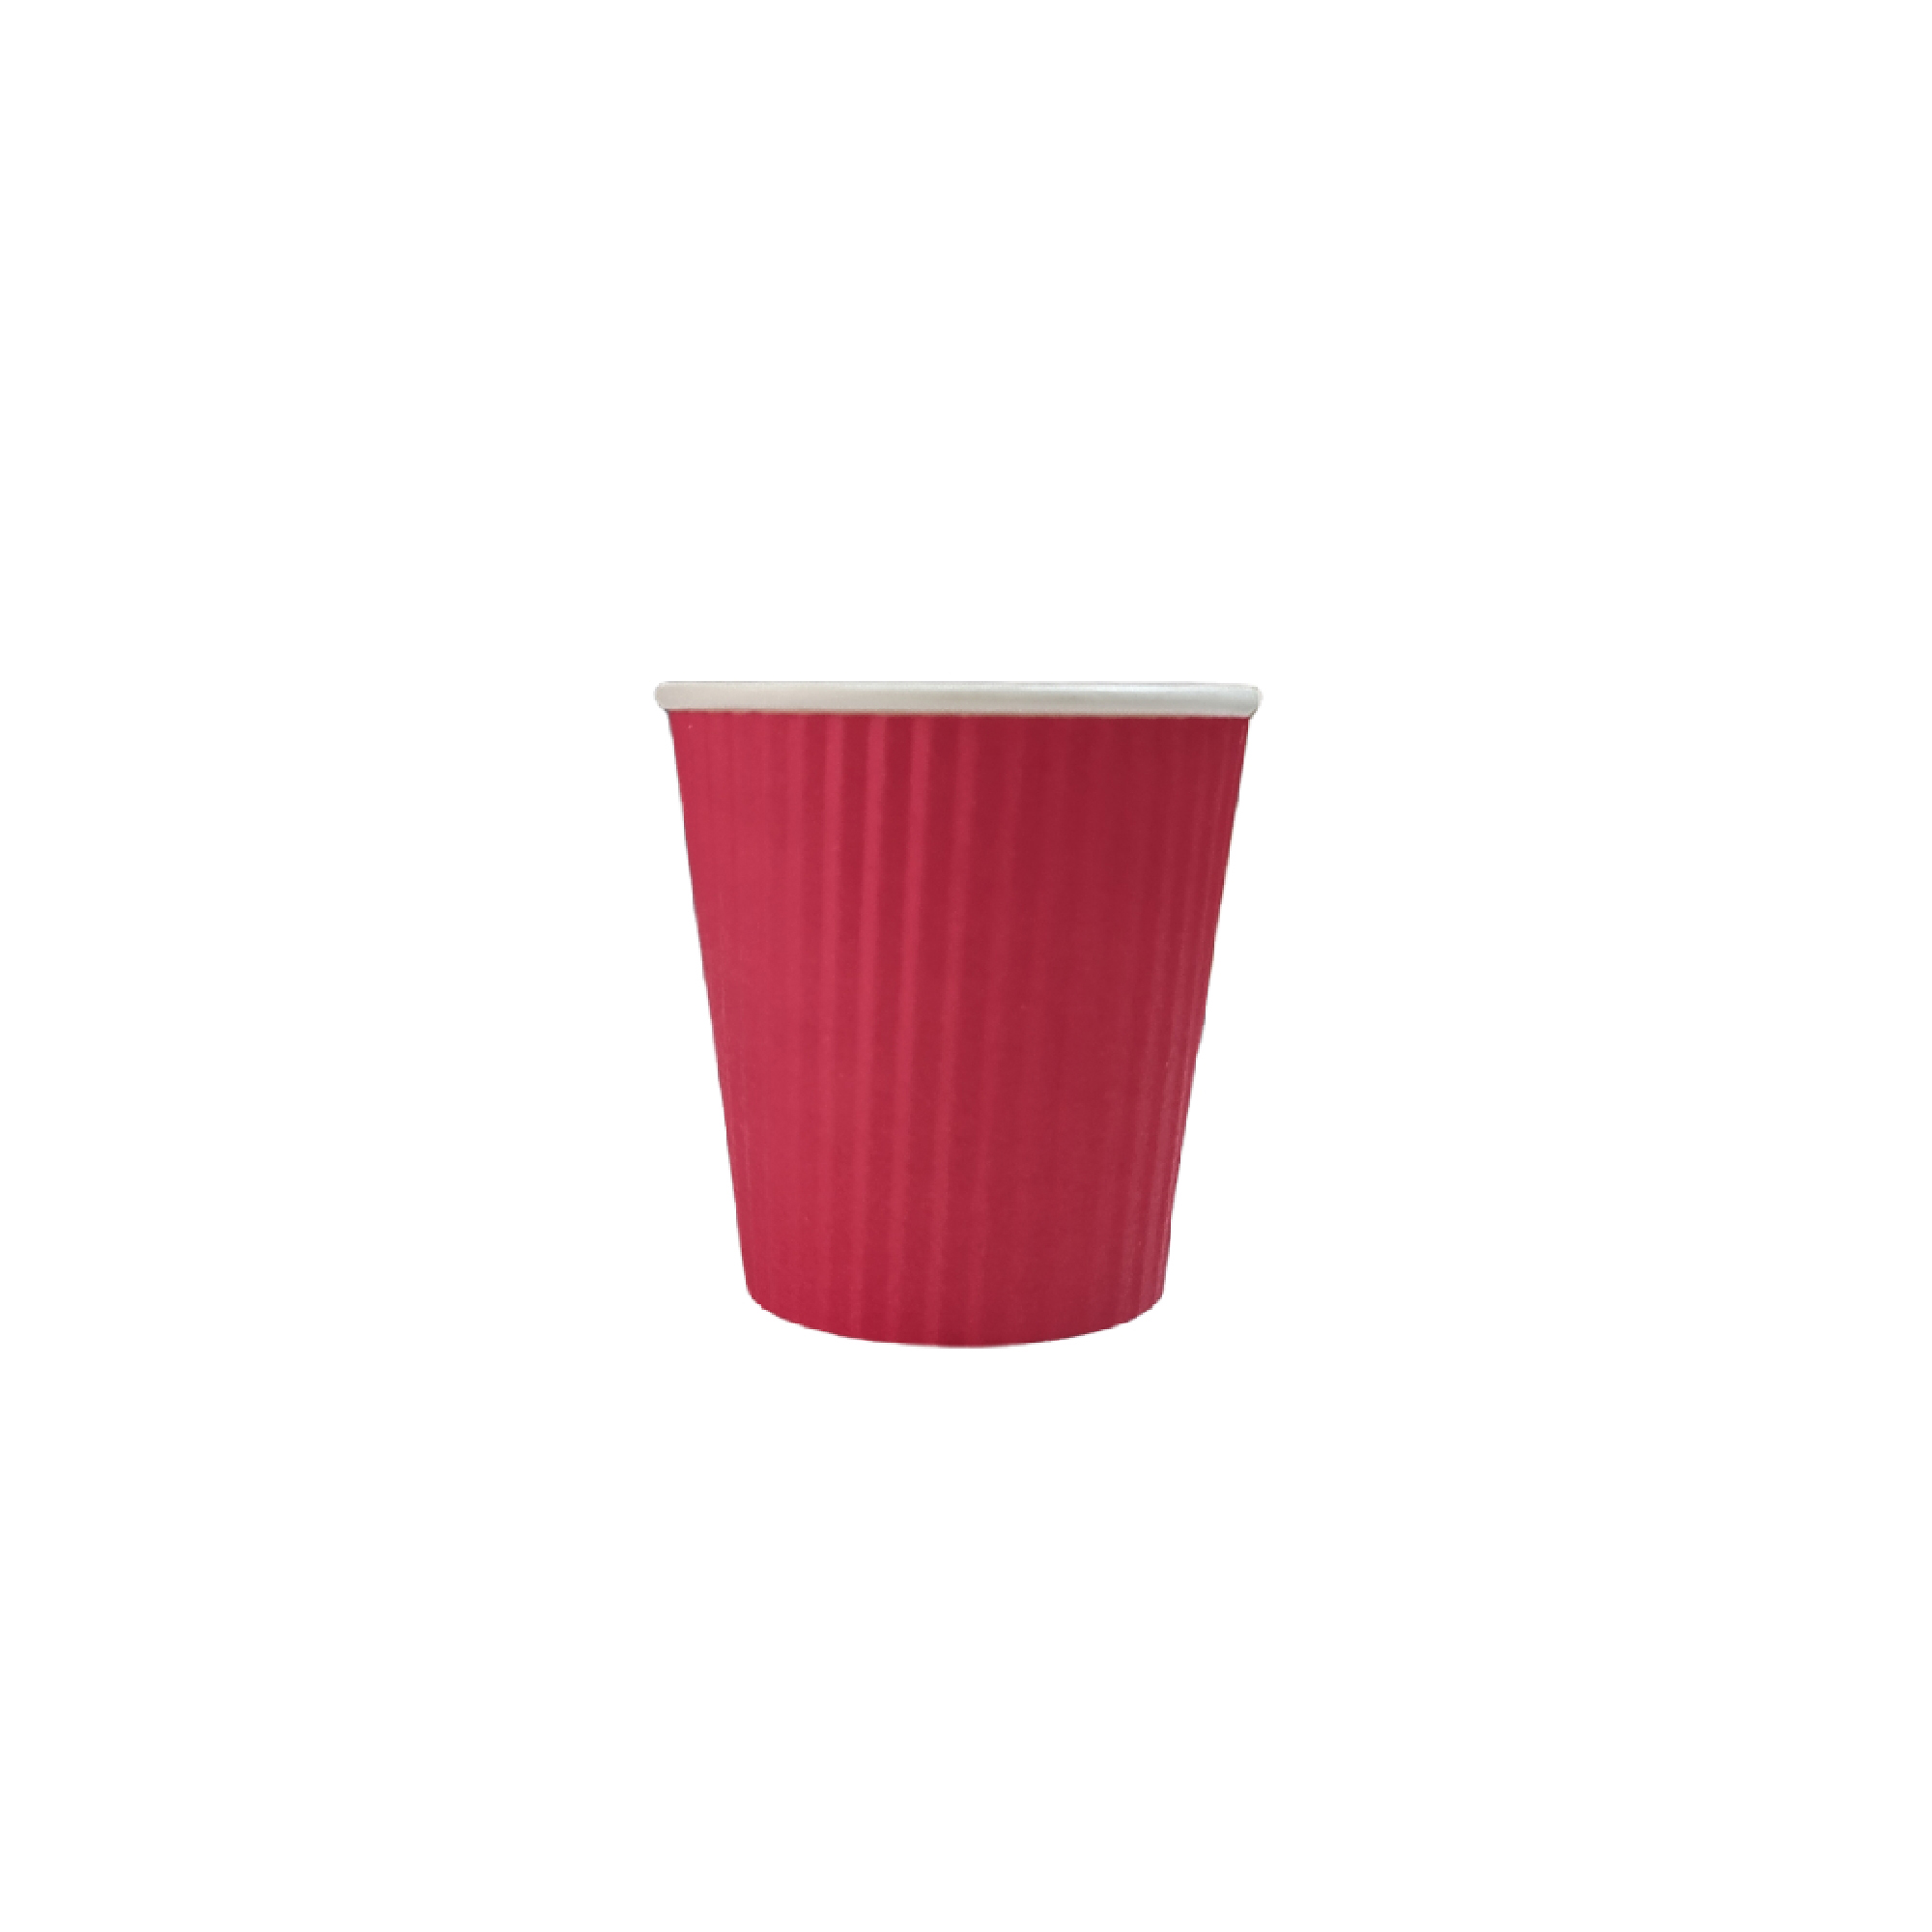 لیوان یکبار مصرف مدل Red Espresso بسته 25 عددی